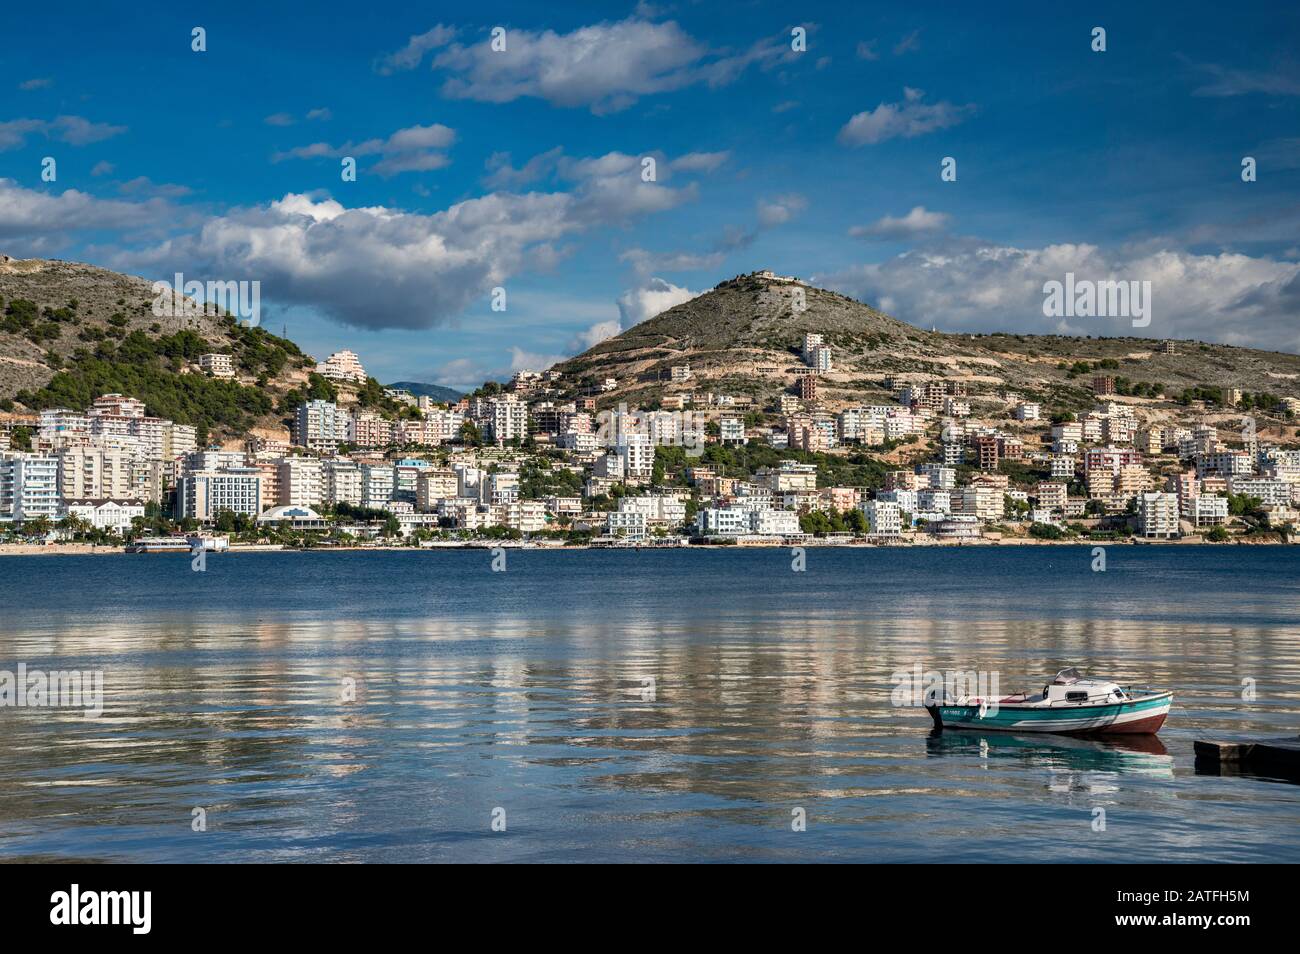 Bay of Saranda, Ionian Sea coast in Saranda (Sarande), Albanian Riviera, Albania Stock Photo